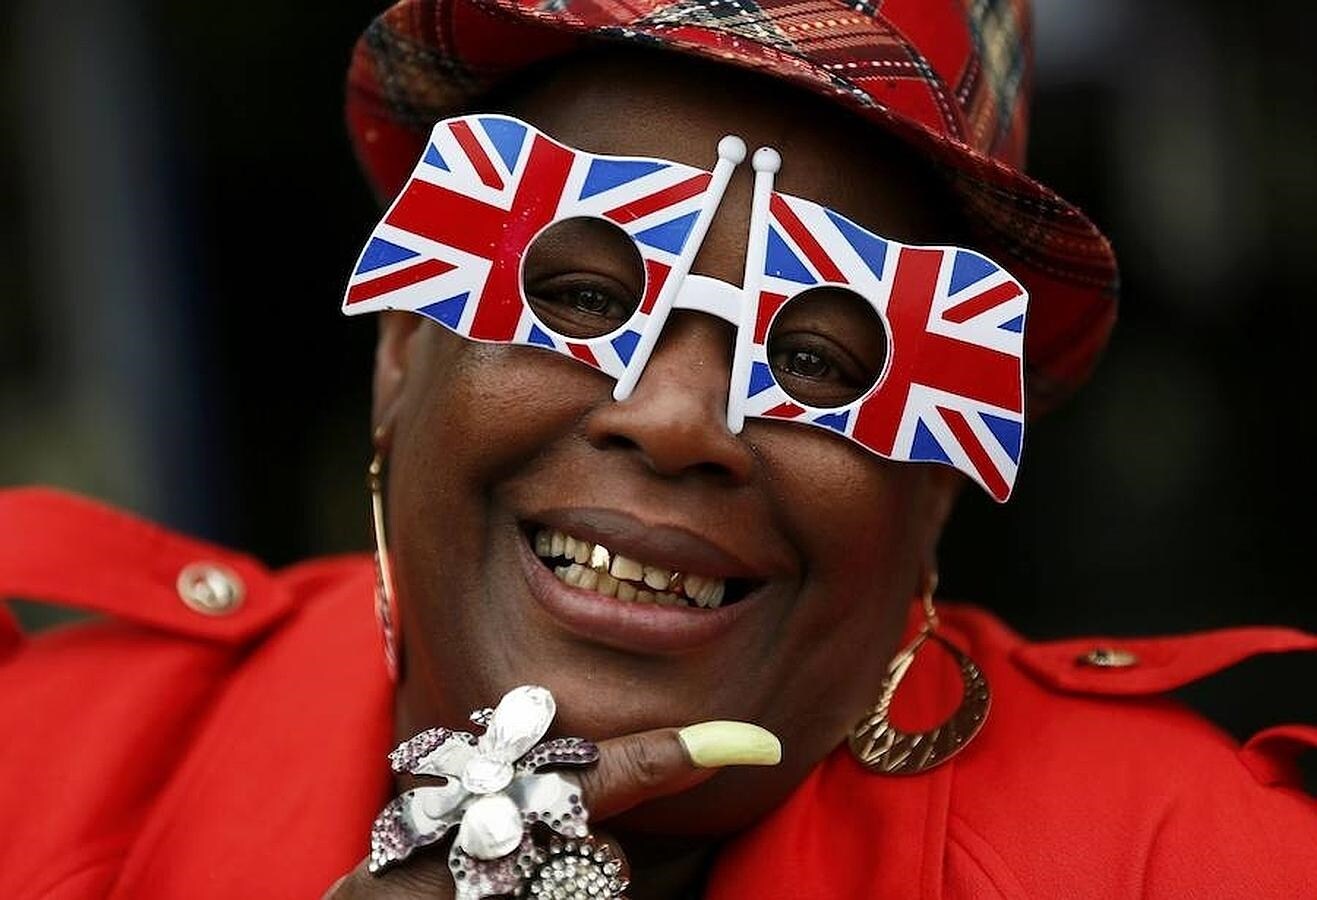 Una mujer posa sonriente con unas gafas con la forma de la bandera británica 